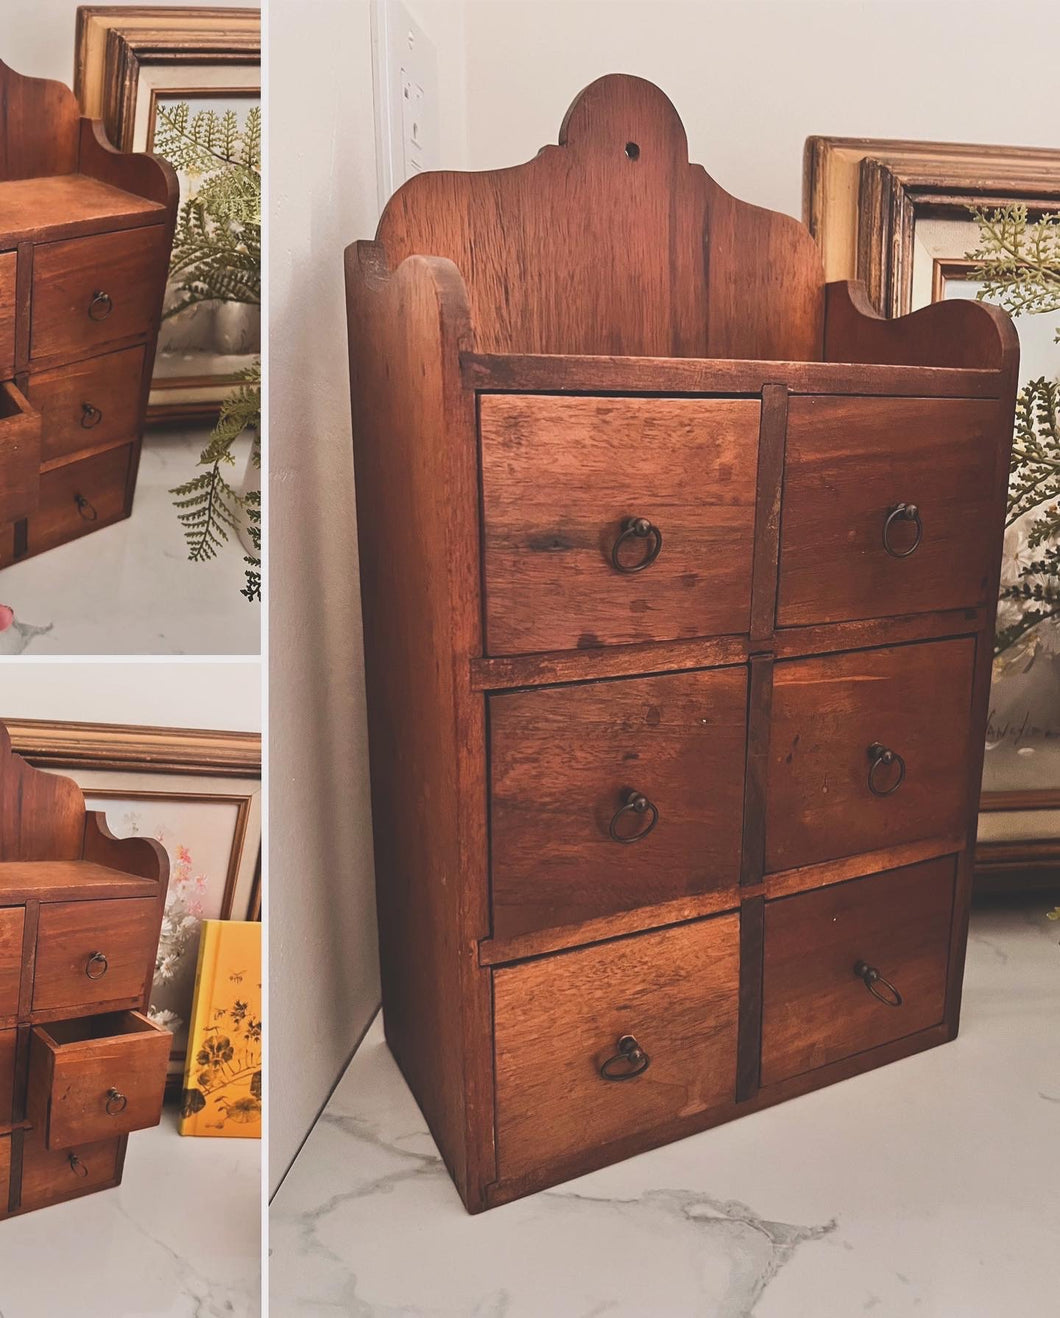 Vintage Wooden Spice Cabinet